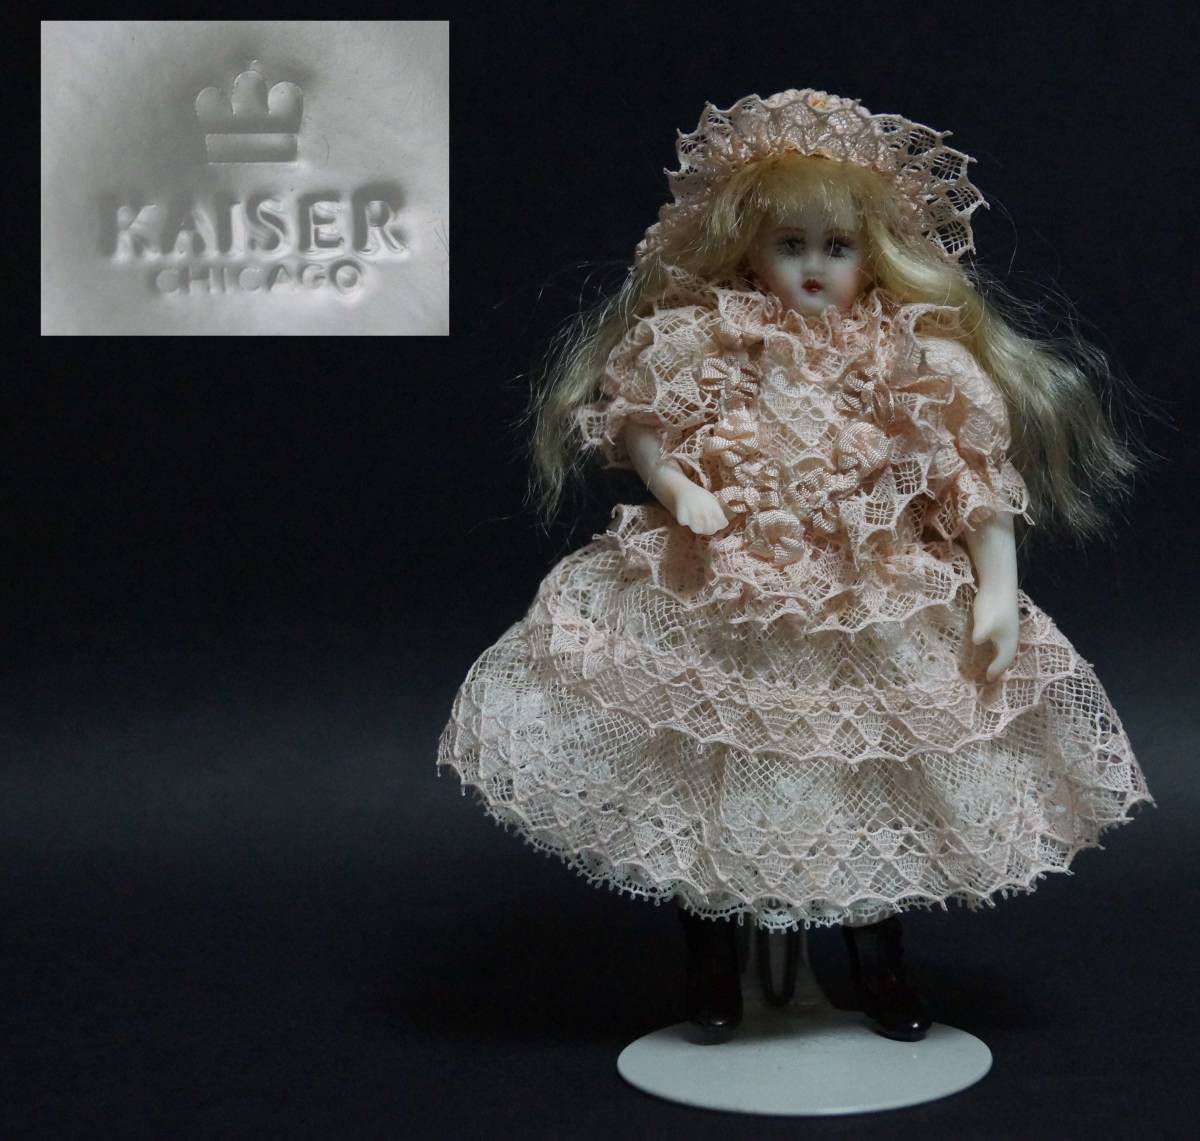 話題の人気 【閑】ドイツ製ビスクドール 可愛らしい女の子人形レースワンピース KAISER CHICAGO台付 西洋美術 5D0803 ビスクドール